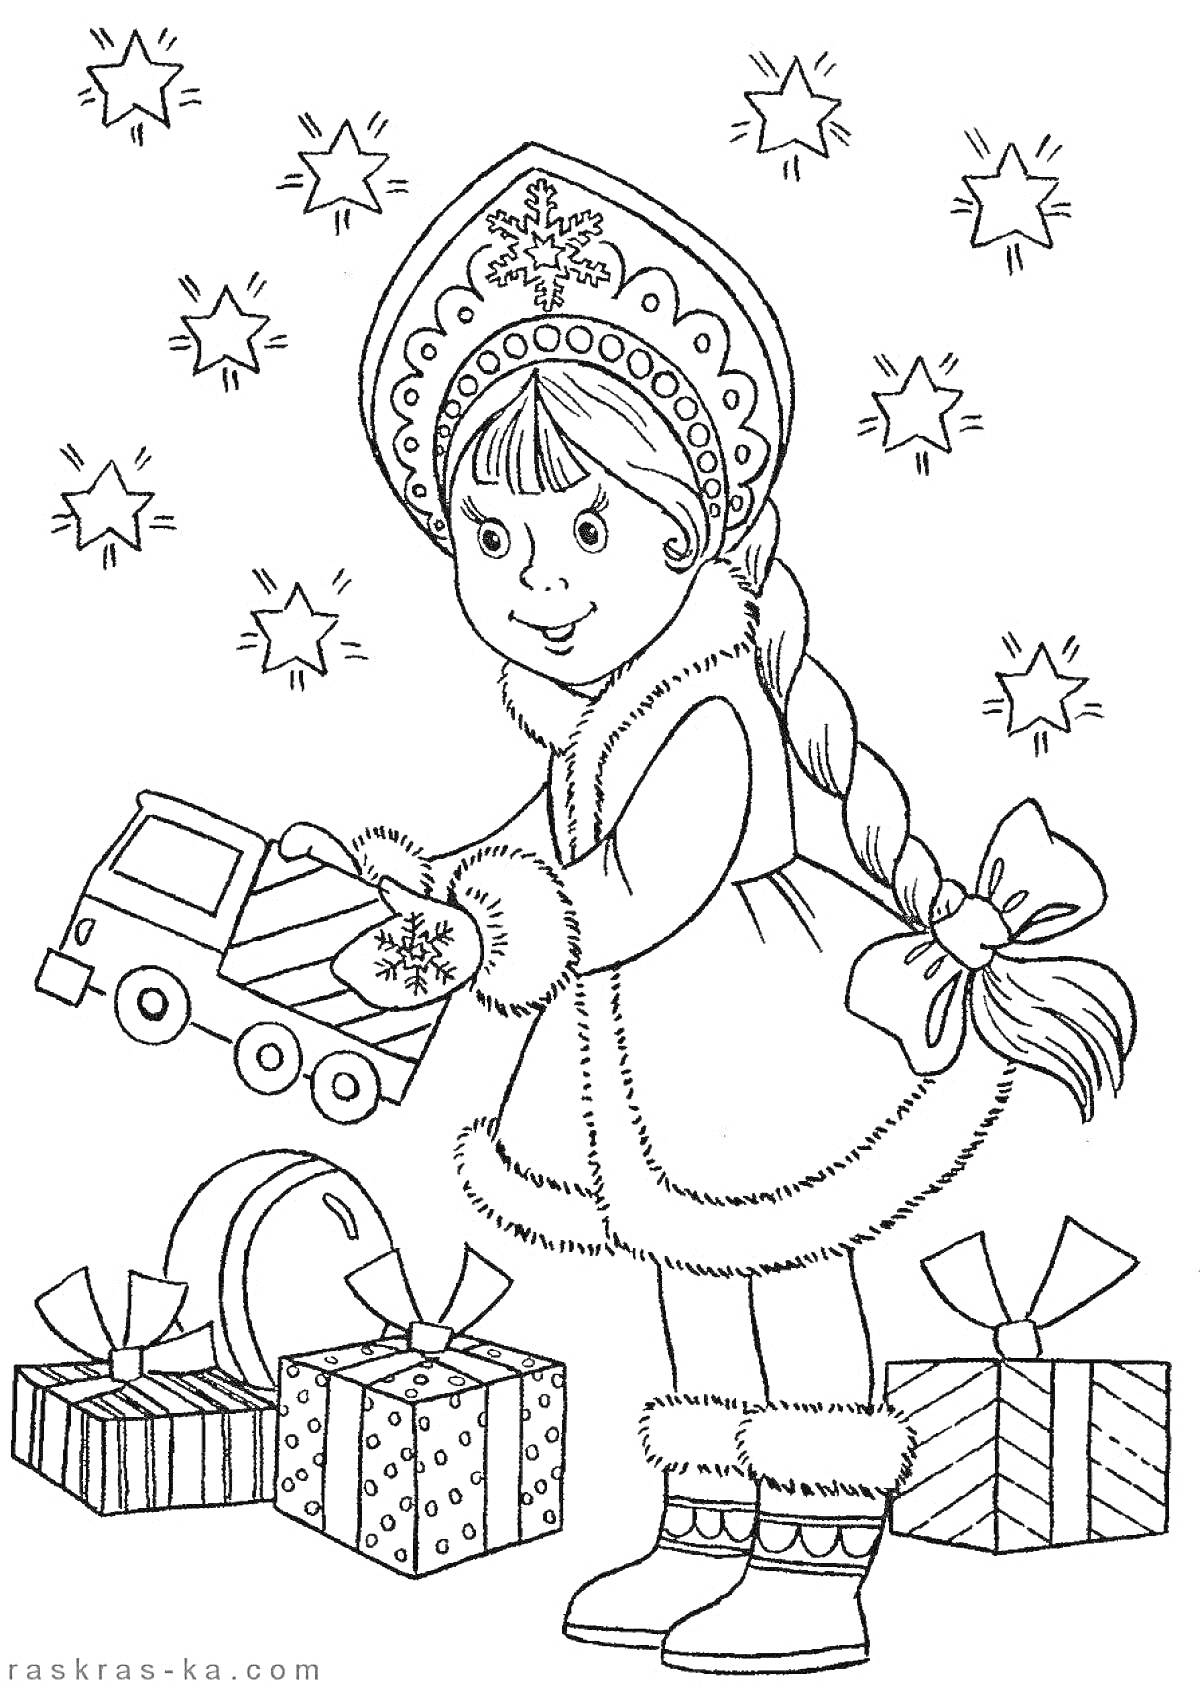 Раскраска Снегурочка с косой, в кокошнике и меховой шубке, с игрушечной машинкой и новогодними подарками под ёлкой